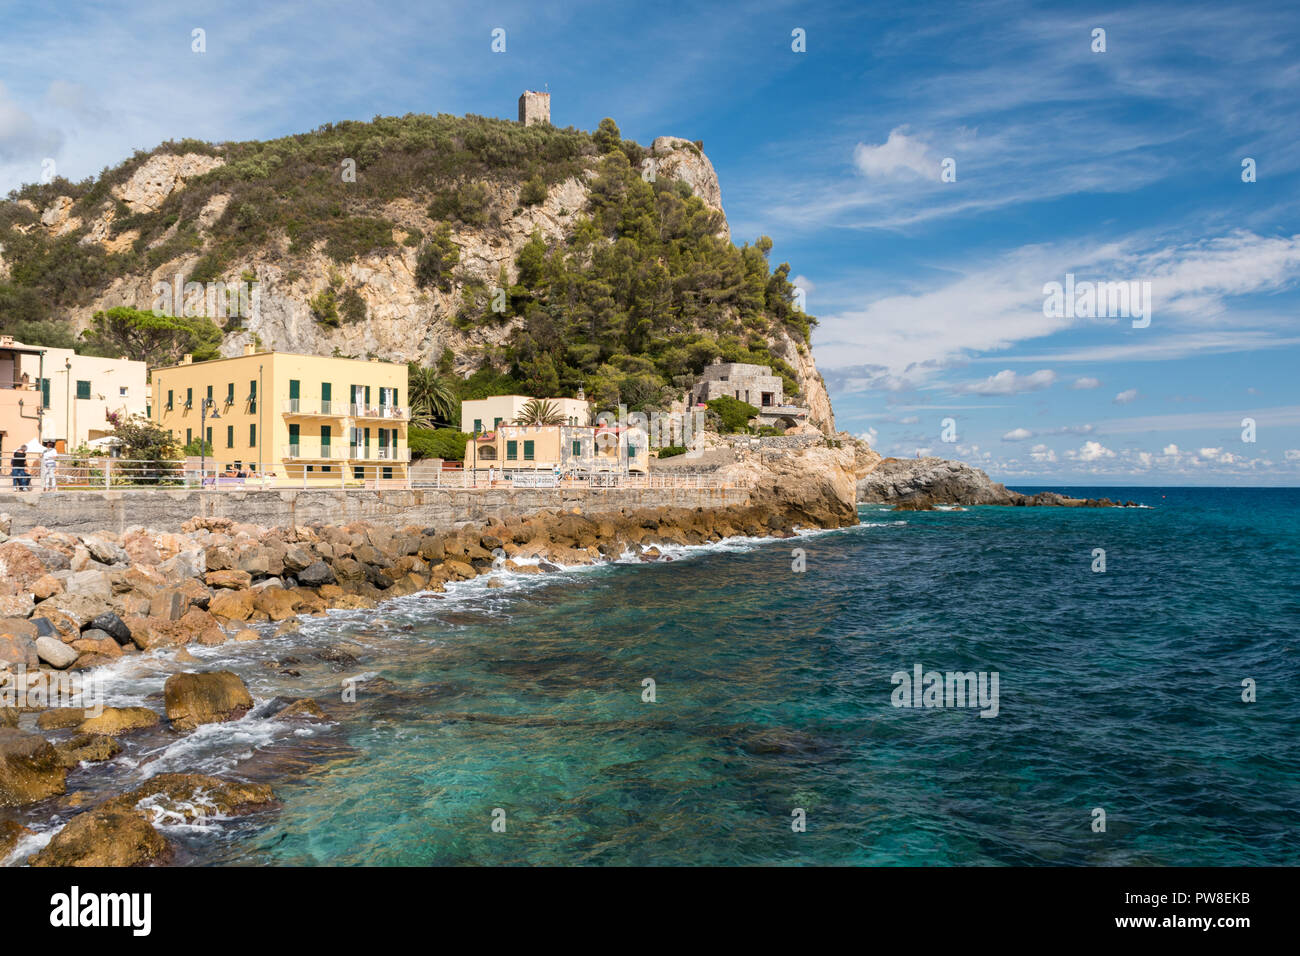 Vista di Varigotti, piccolo villaggio sul mare vicino a Savona durante un pomeriggio soleggiato Foto Stock